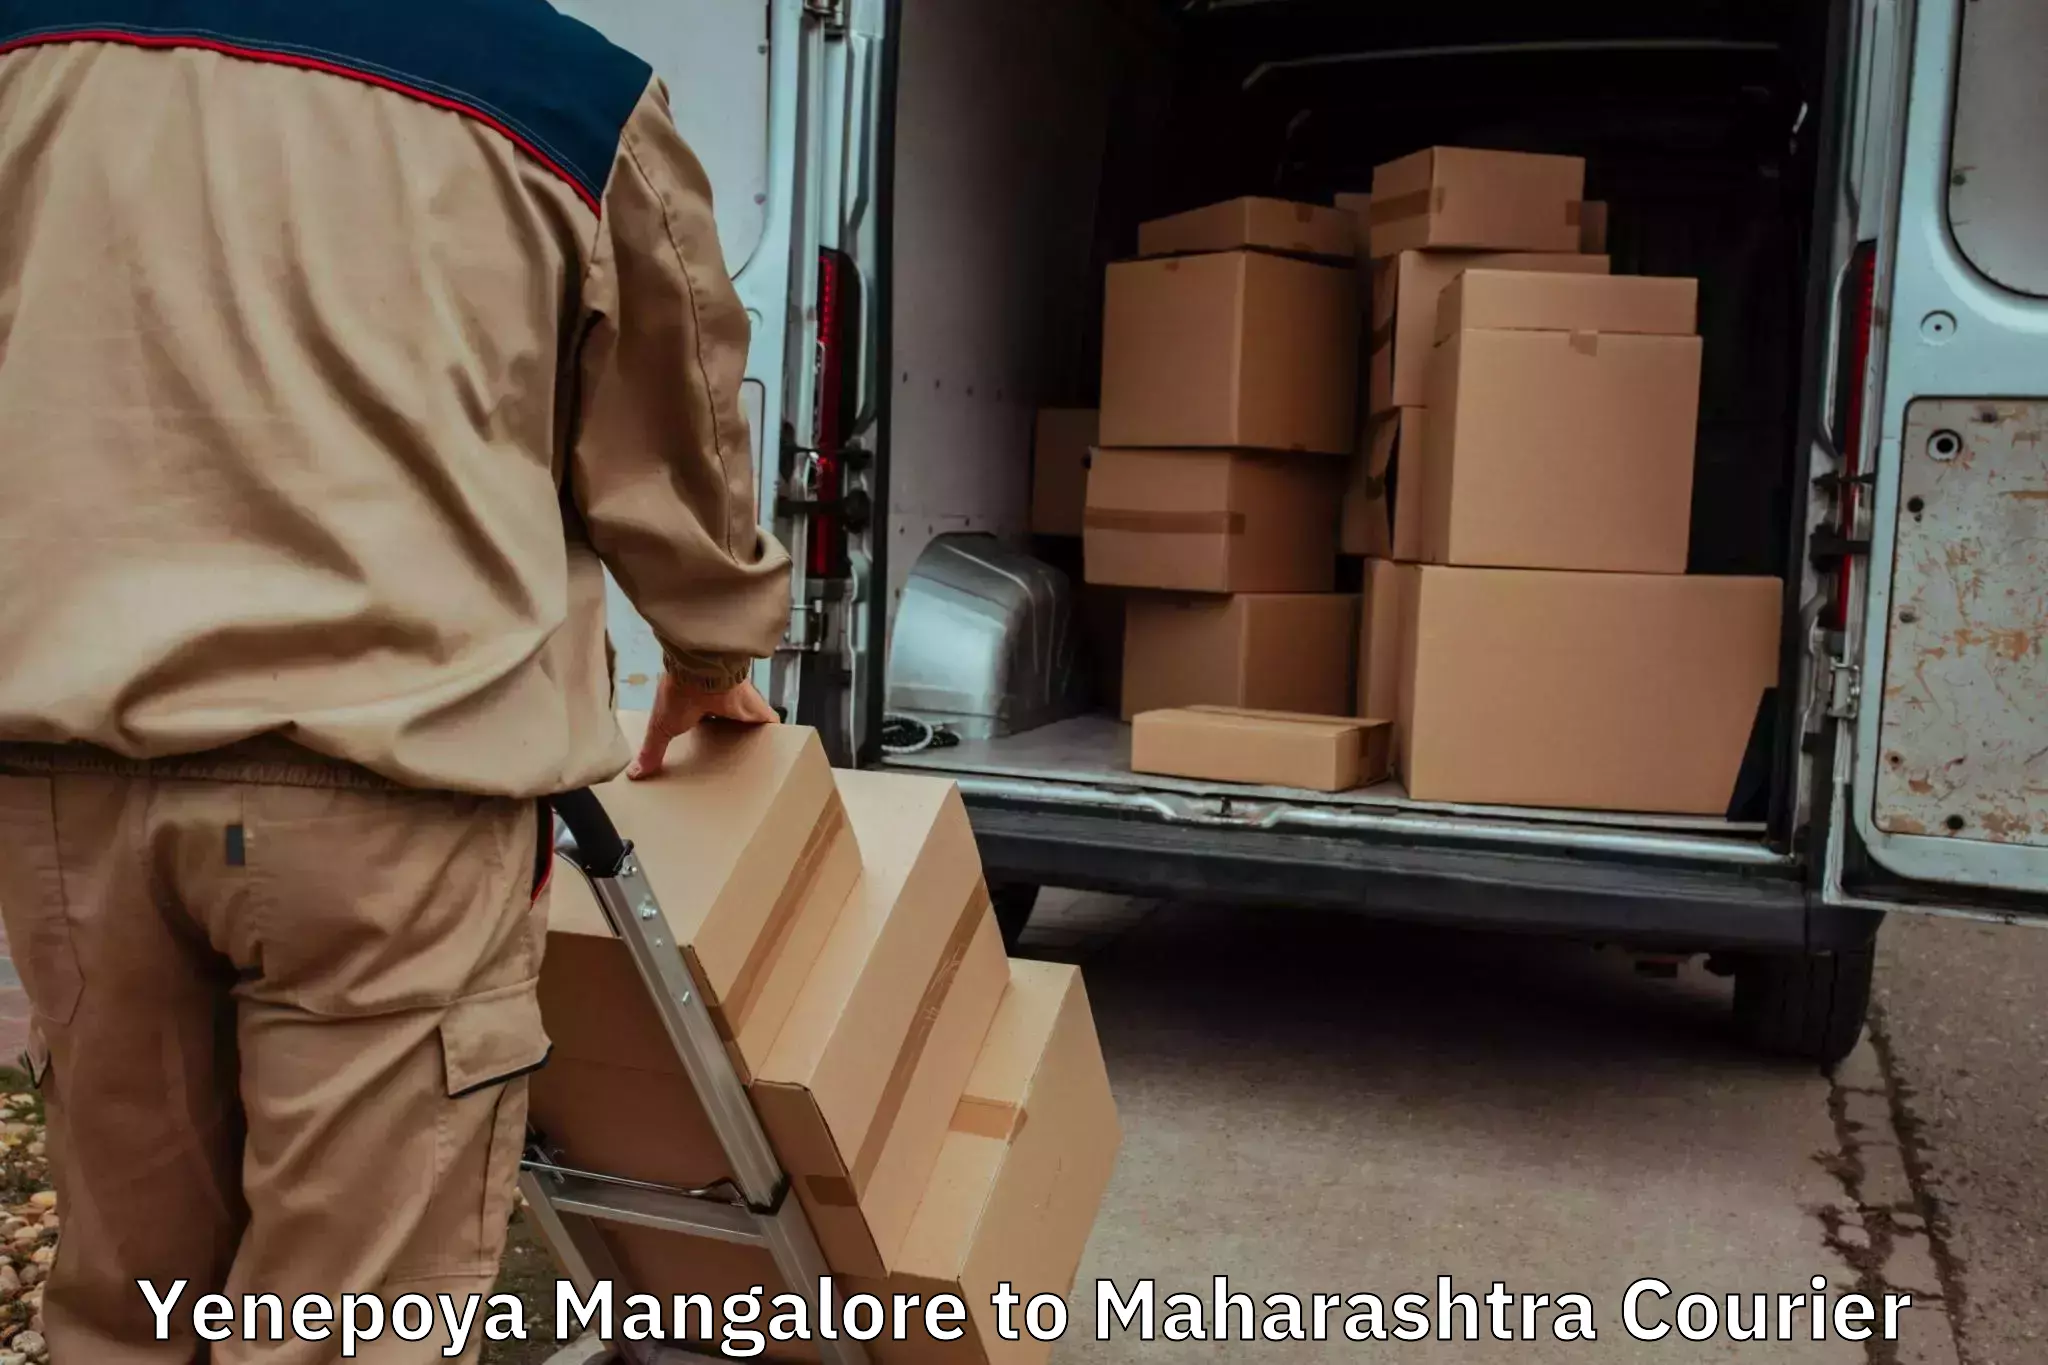 Budget-friendly moving services in Yenepoya Mangalore to Maharashtra